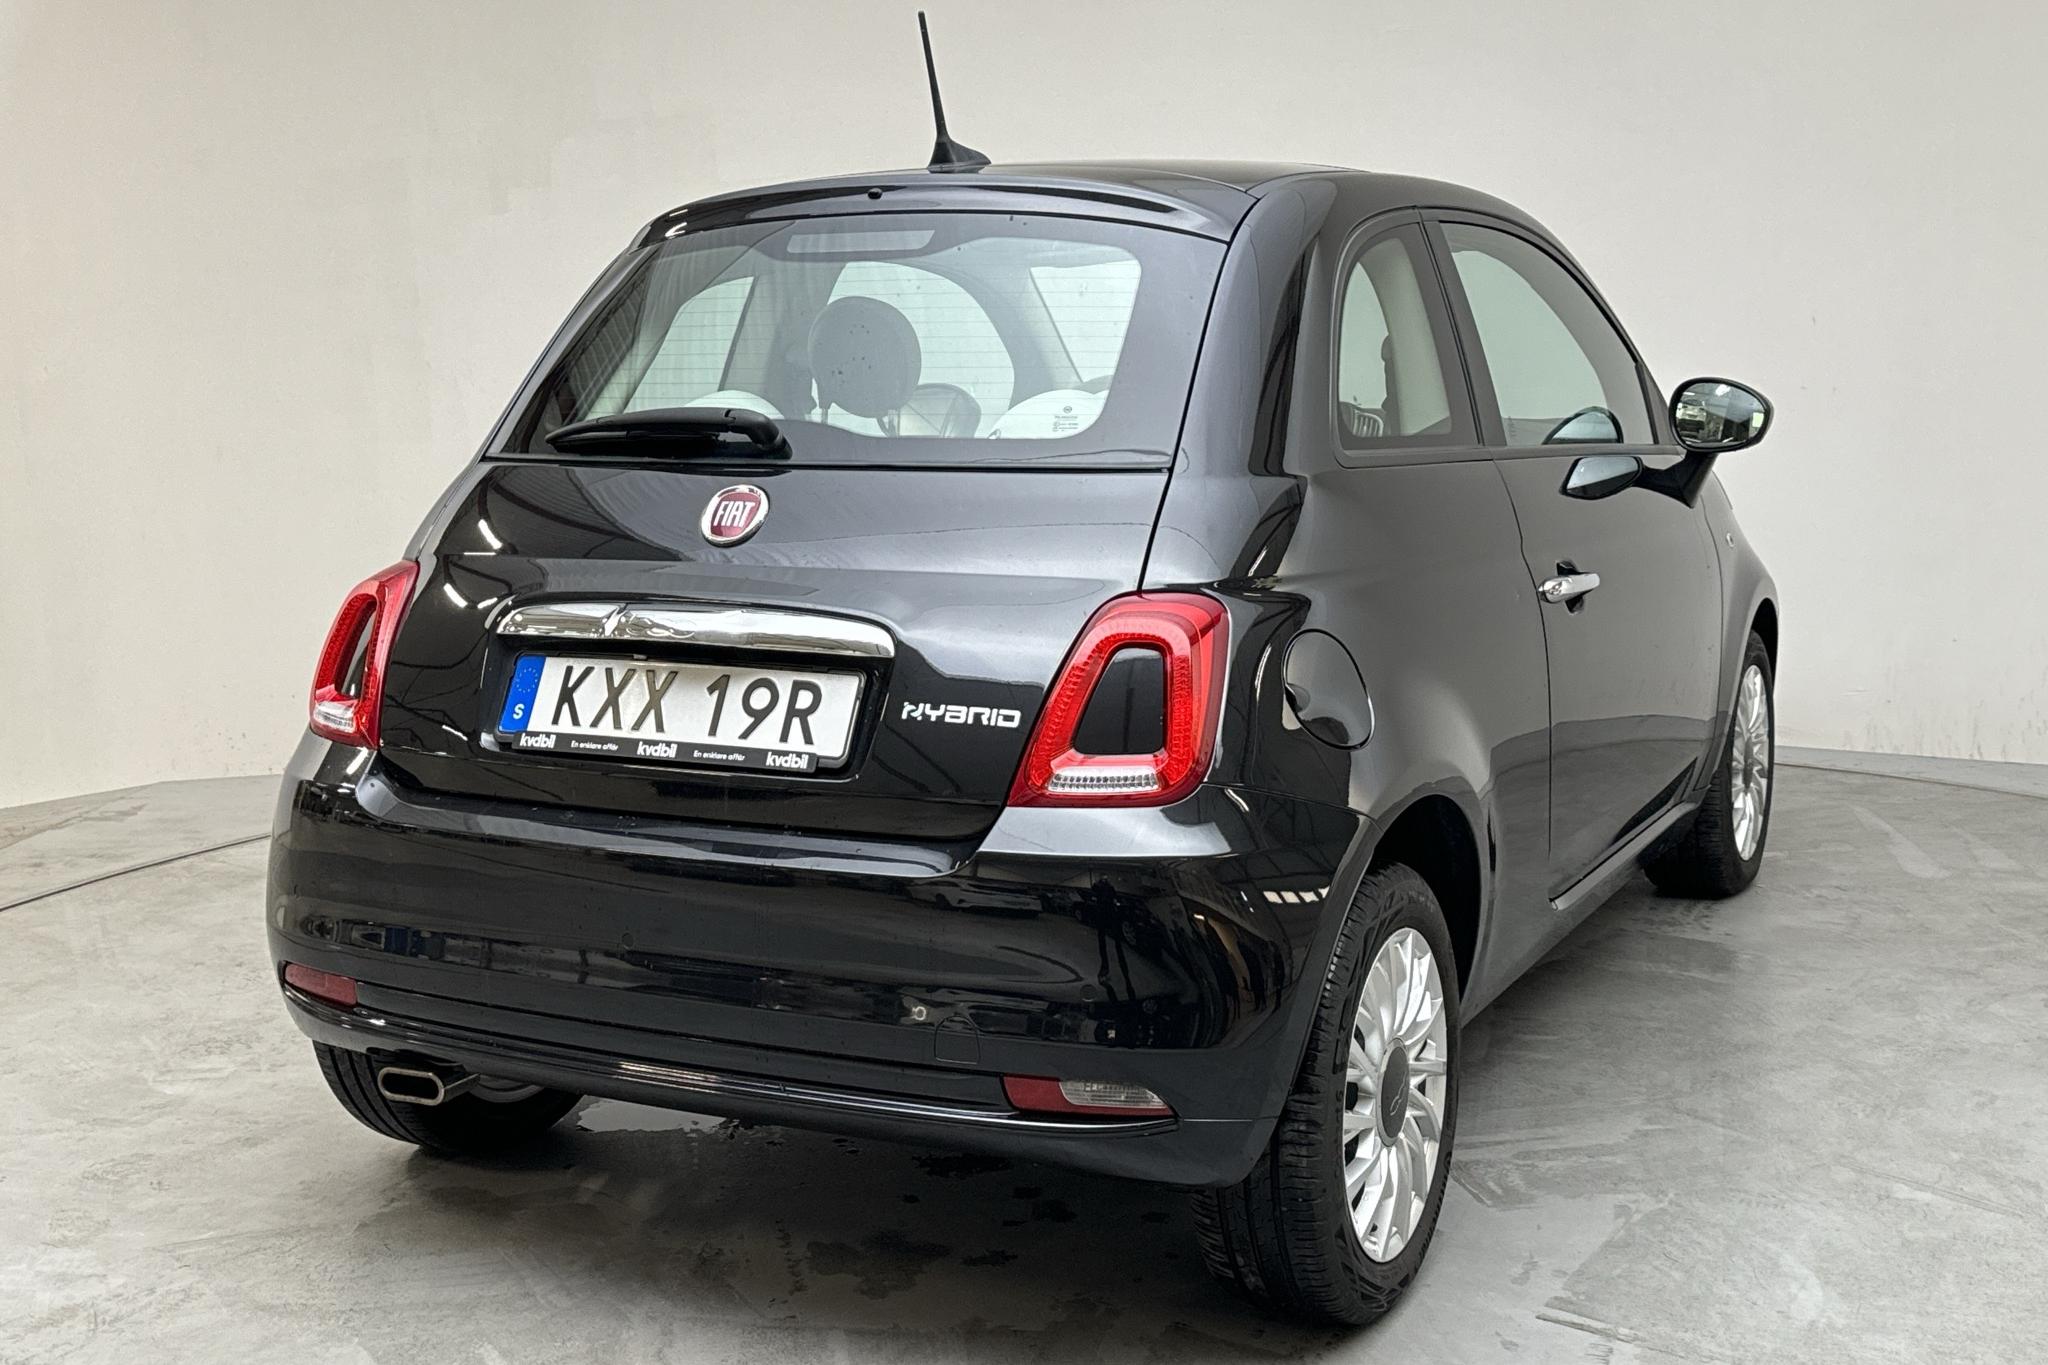 Fiat 500 BSG (70hk) - 57 020 km - Manual - black - 2021